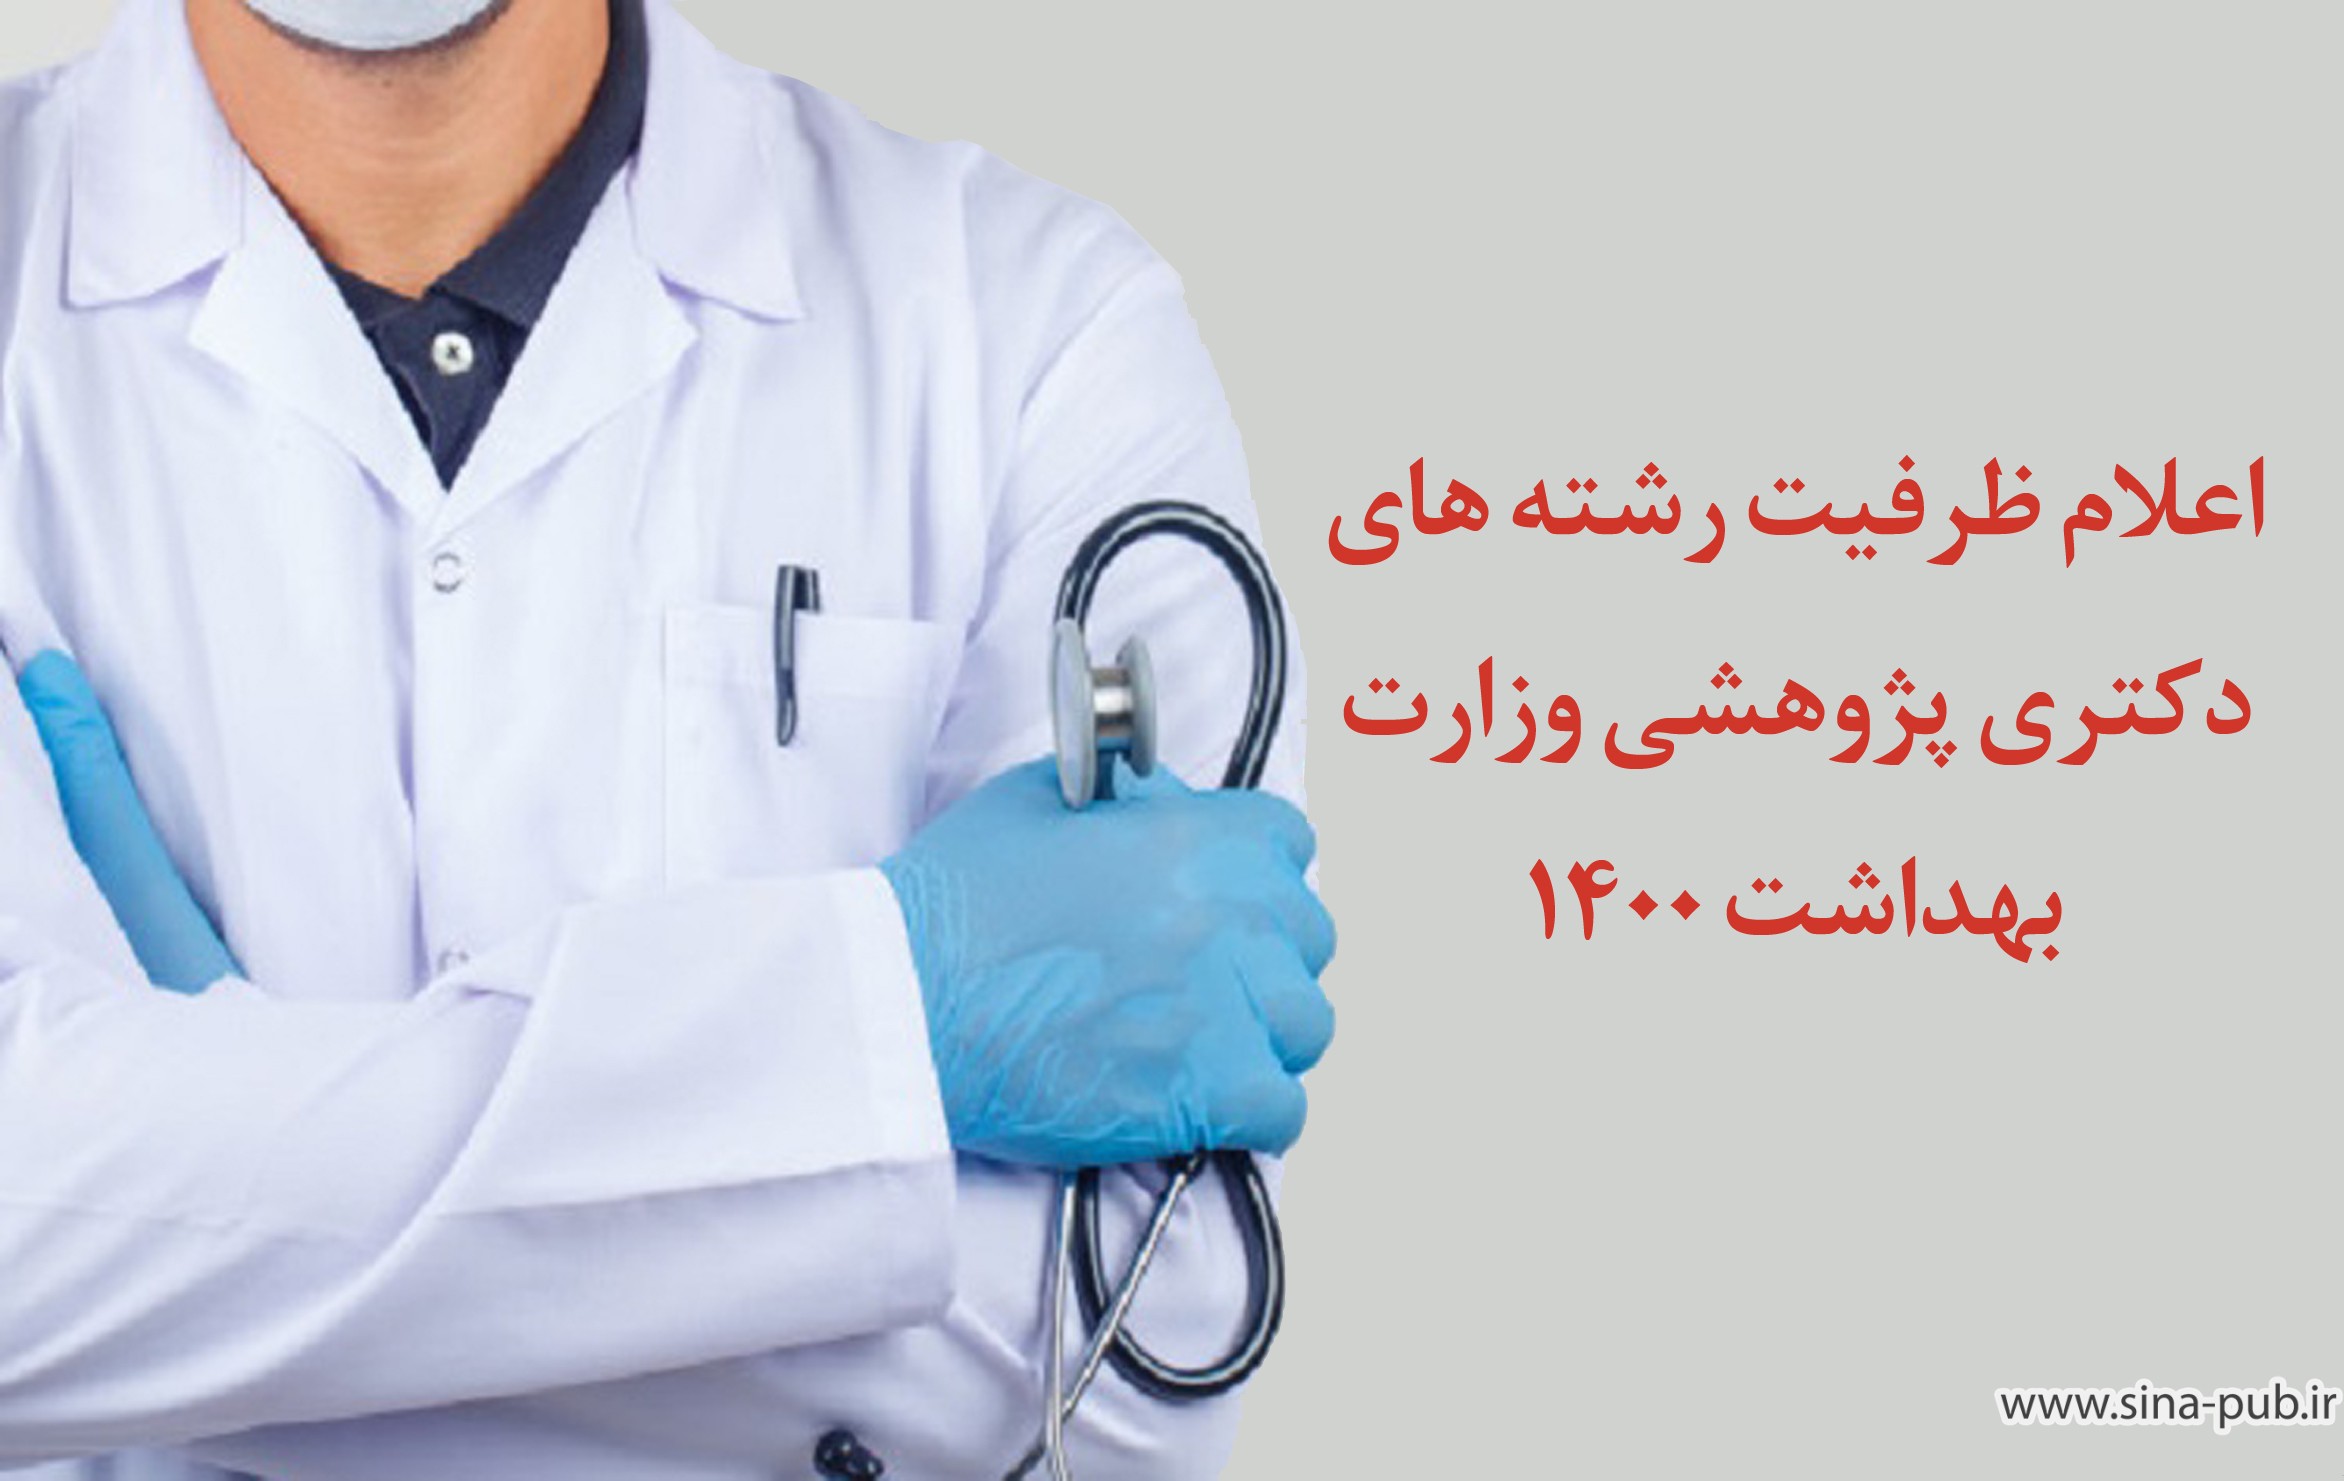 اعلام ظرفیت رشته های دکتری پژوهشی وزارت بهداشت 1400